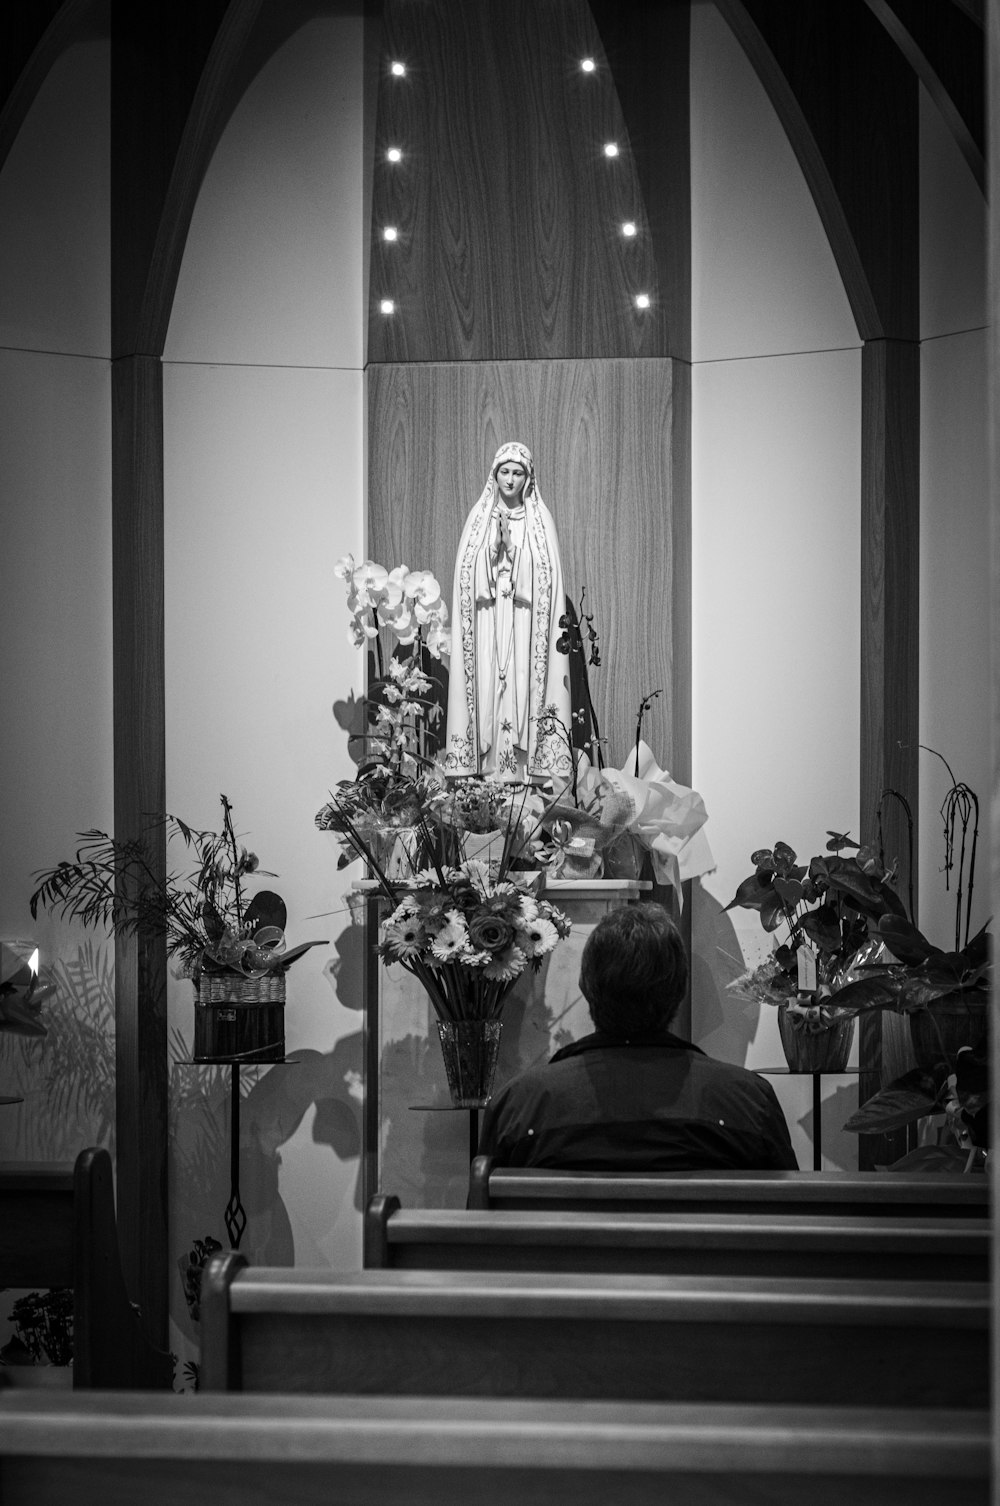 Photographie en niveaux de gris d’une personne assise devant une figure religieuse